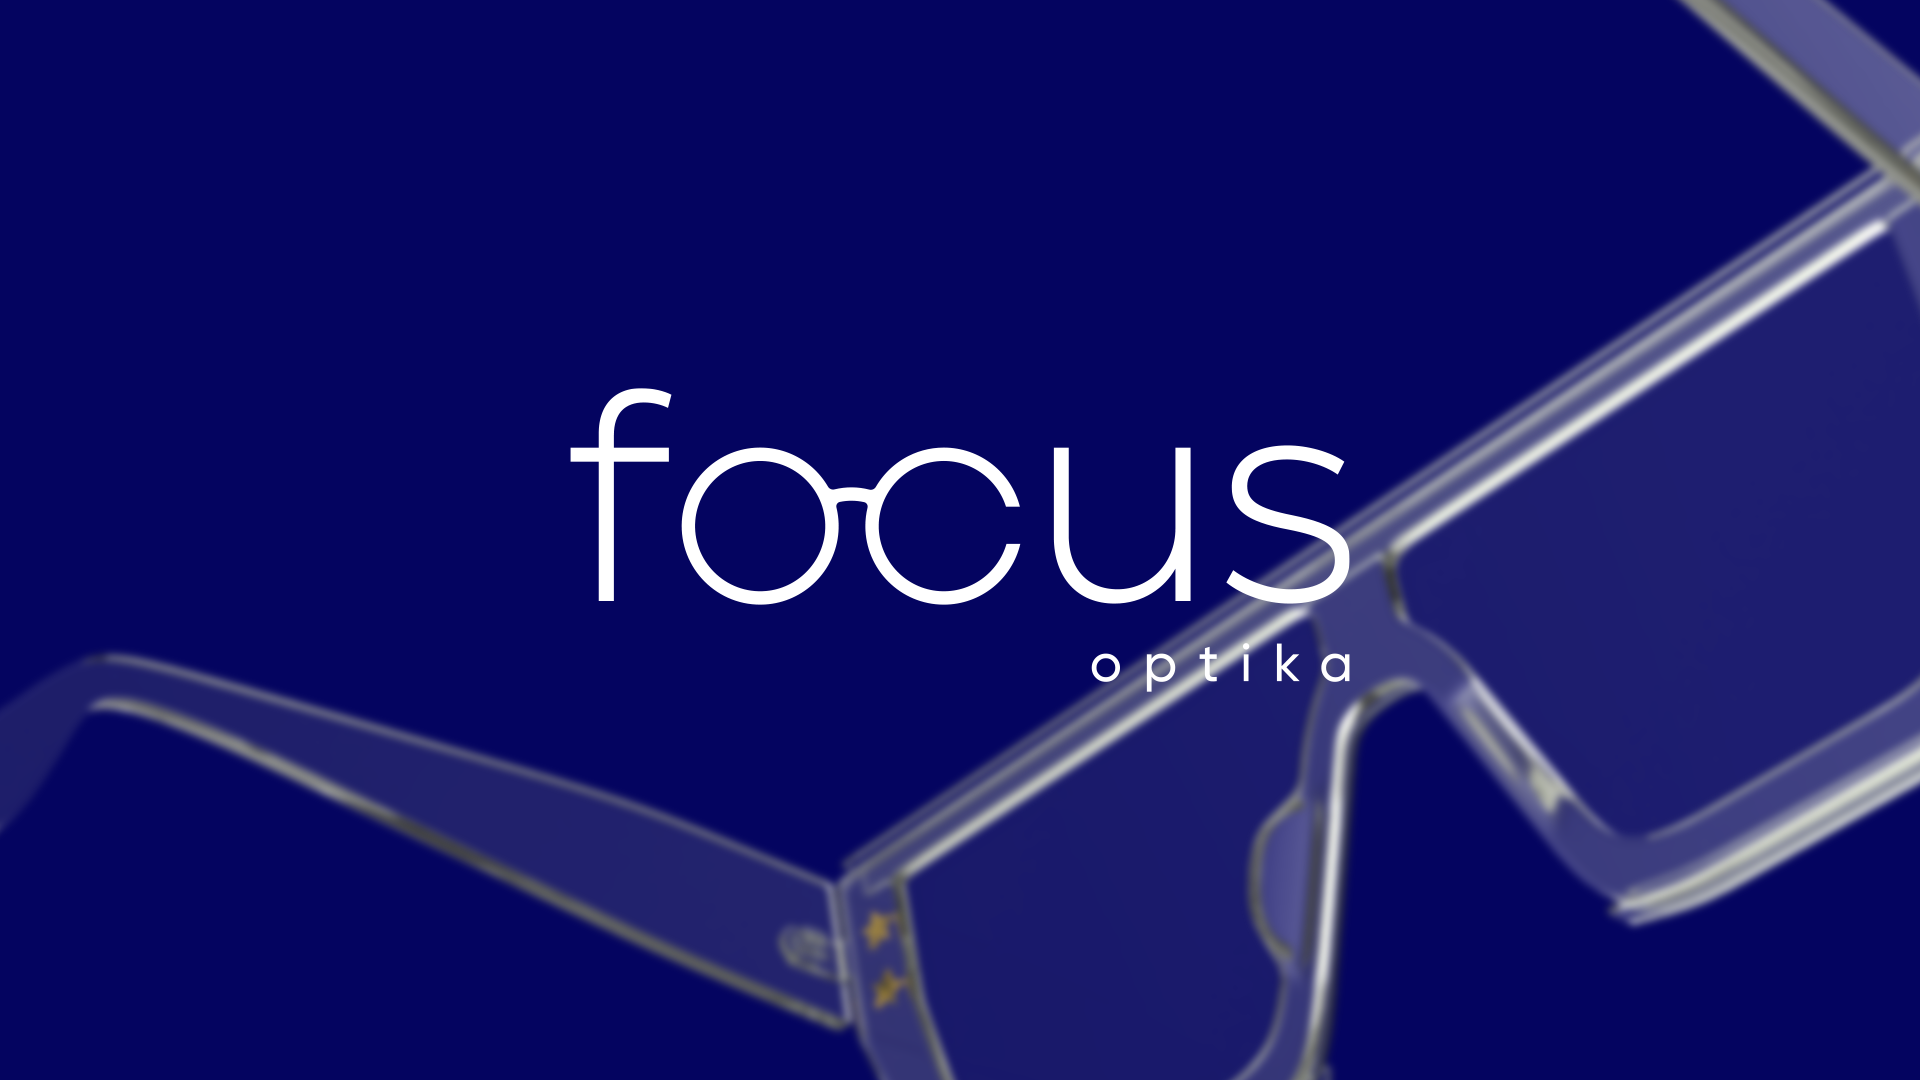 Focus Optics - Rebranding